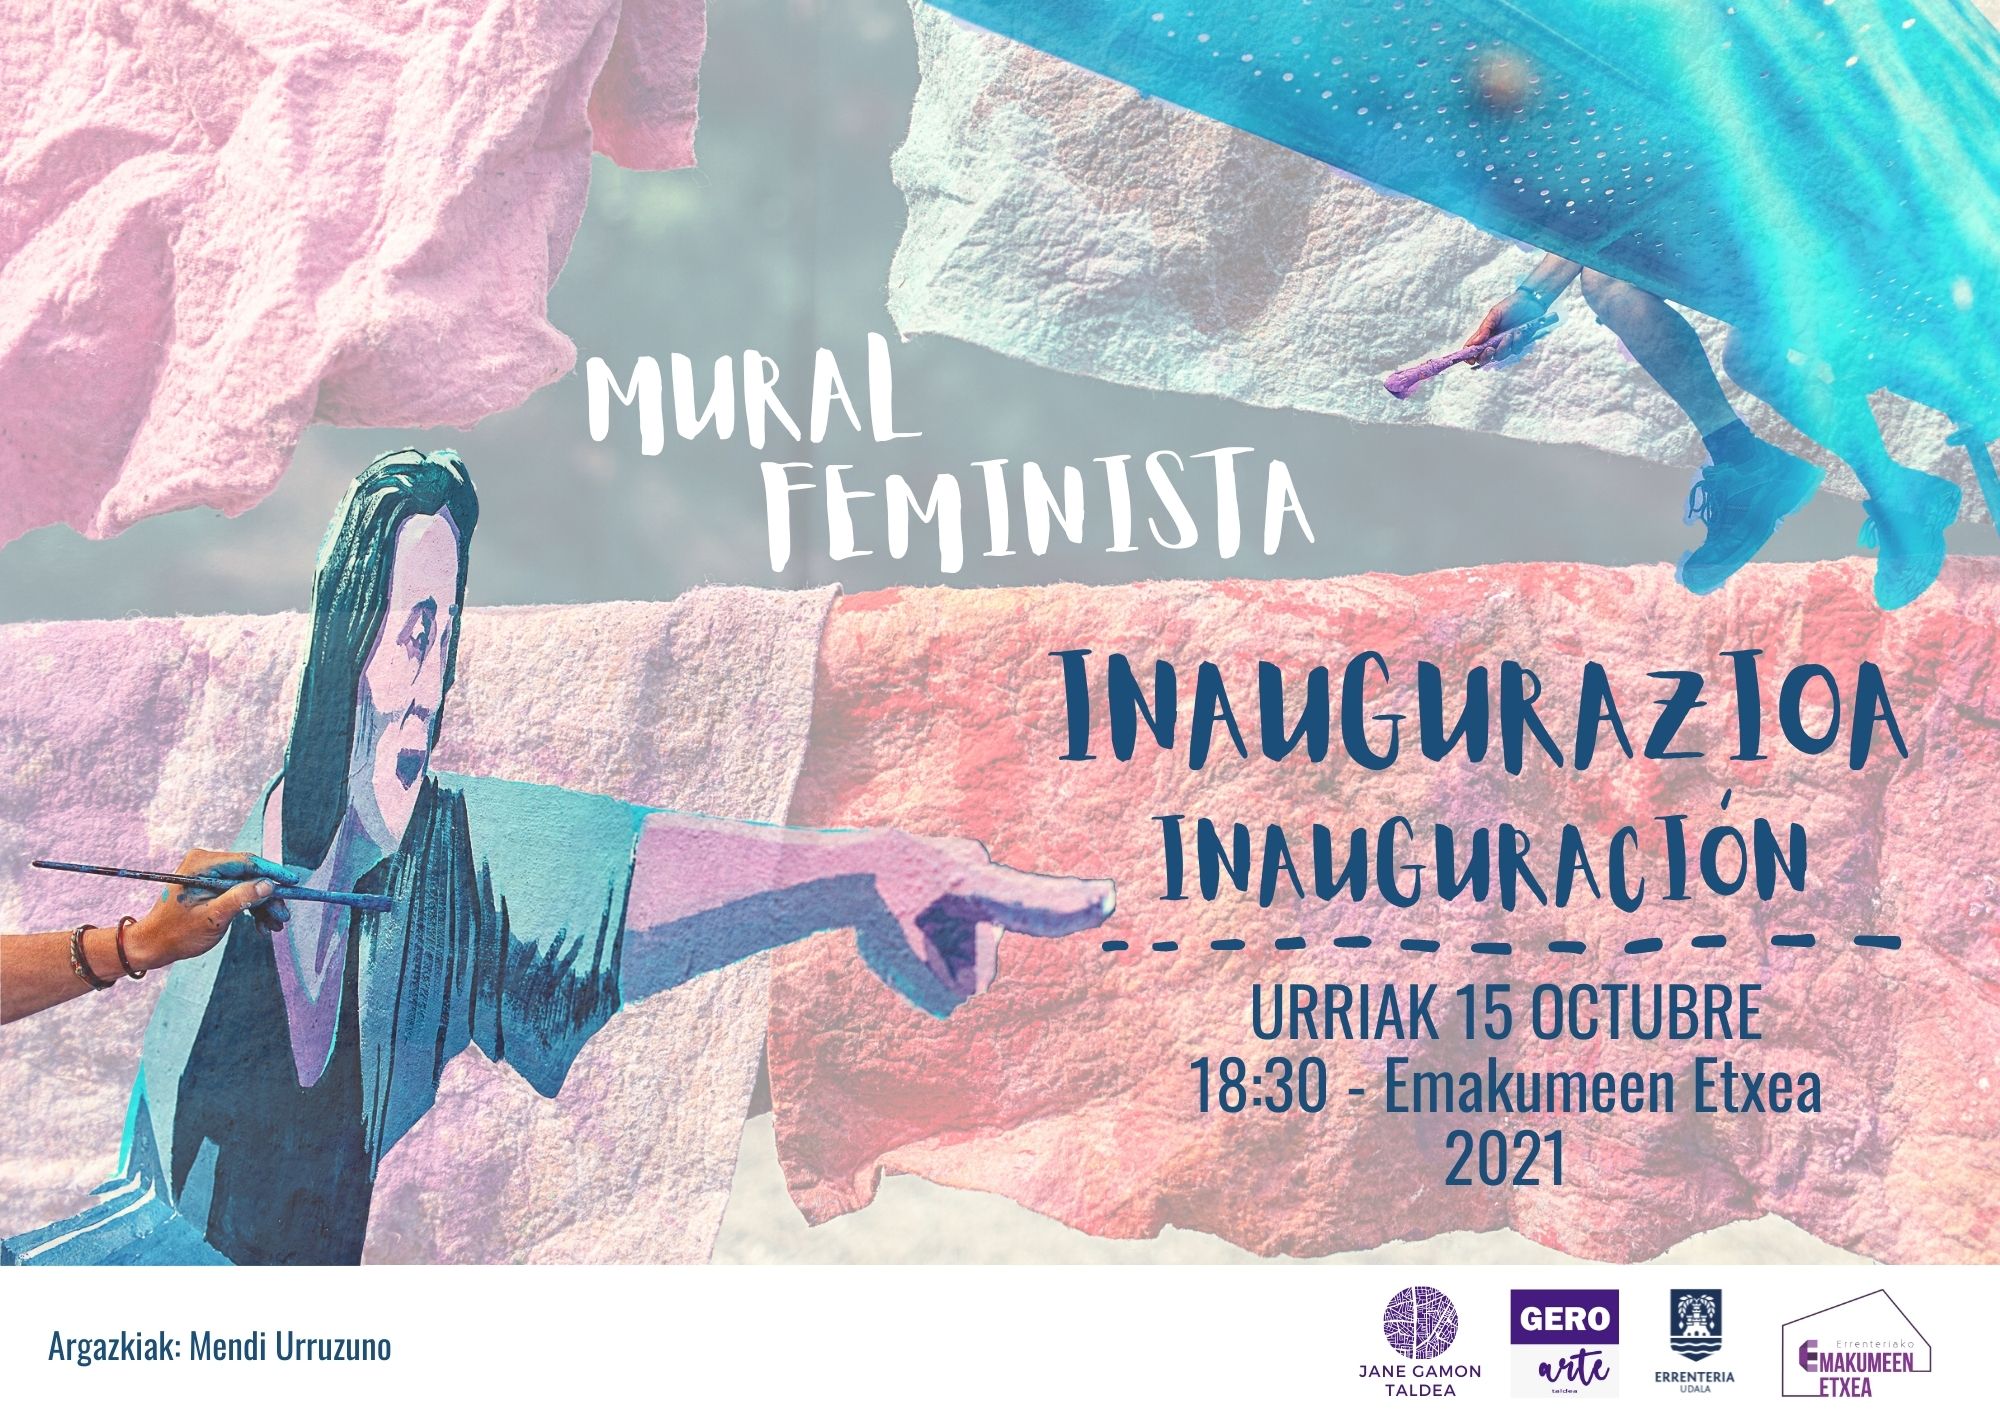 Ostiralean inauguratuko da uda honetan emakumeek egindako mural feminista